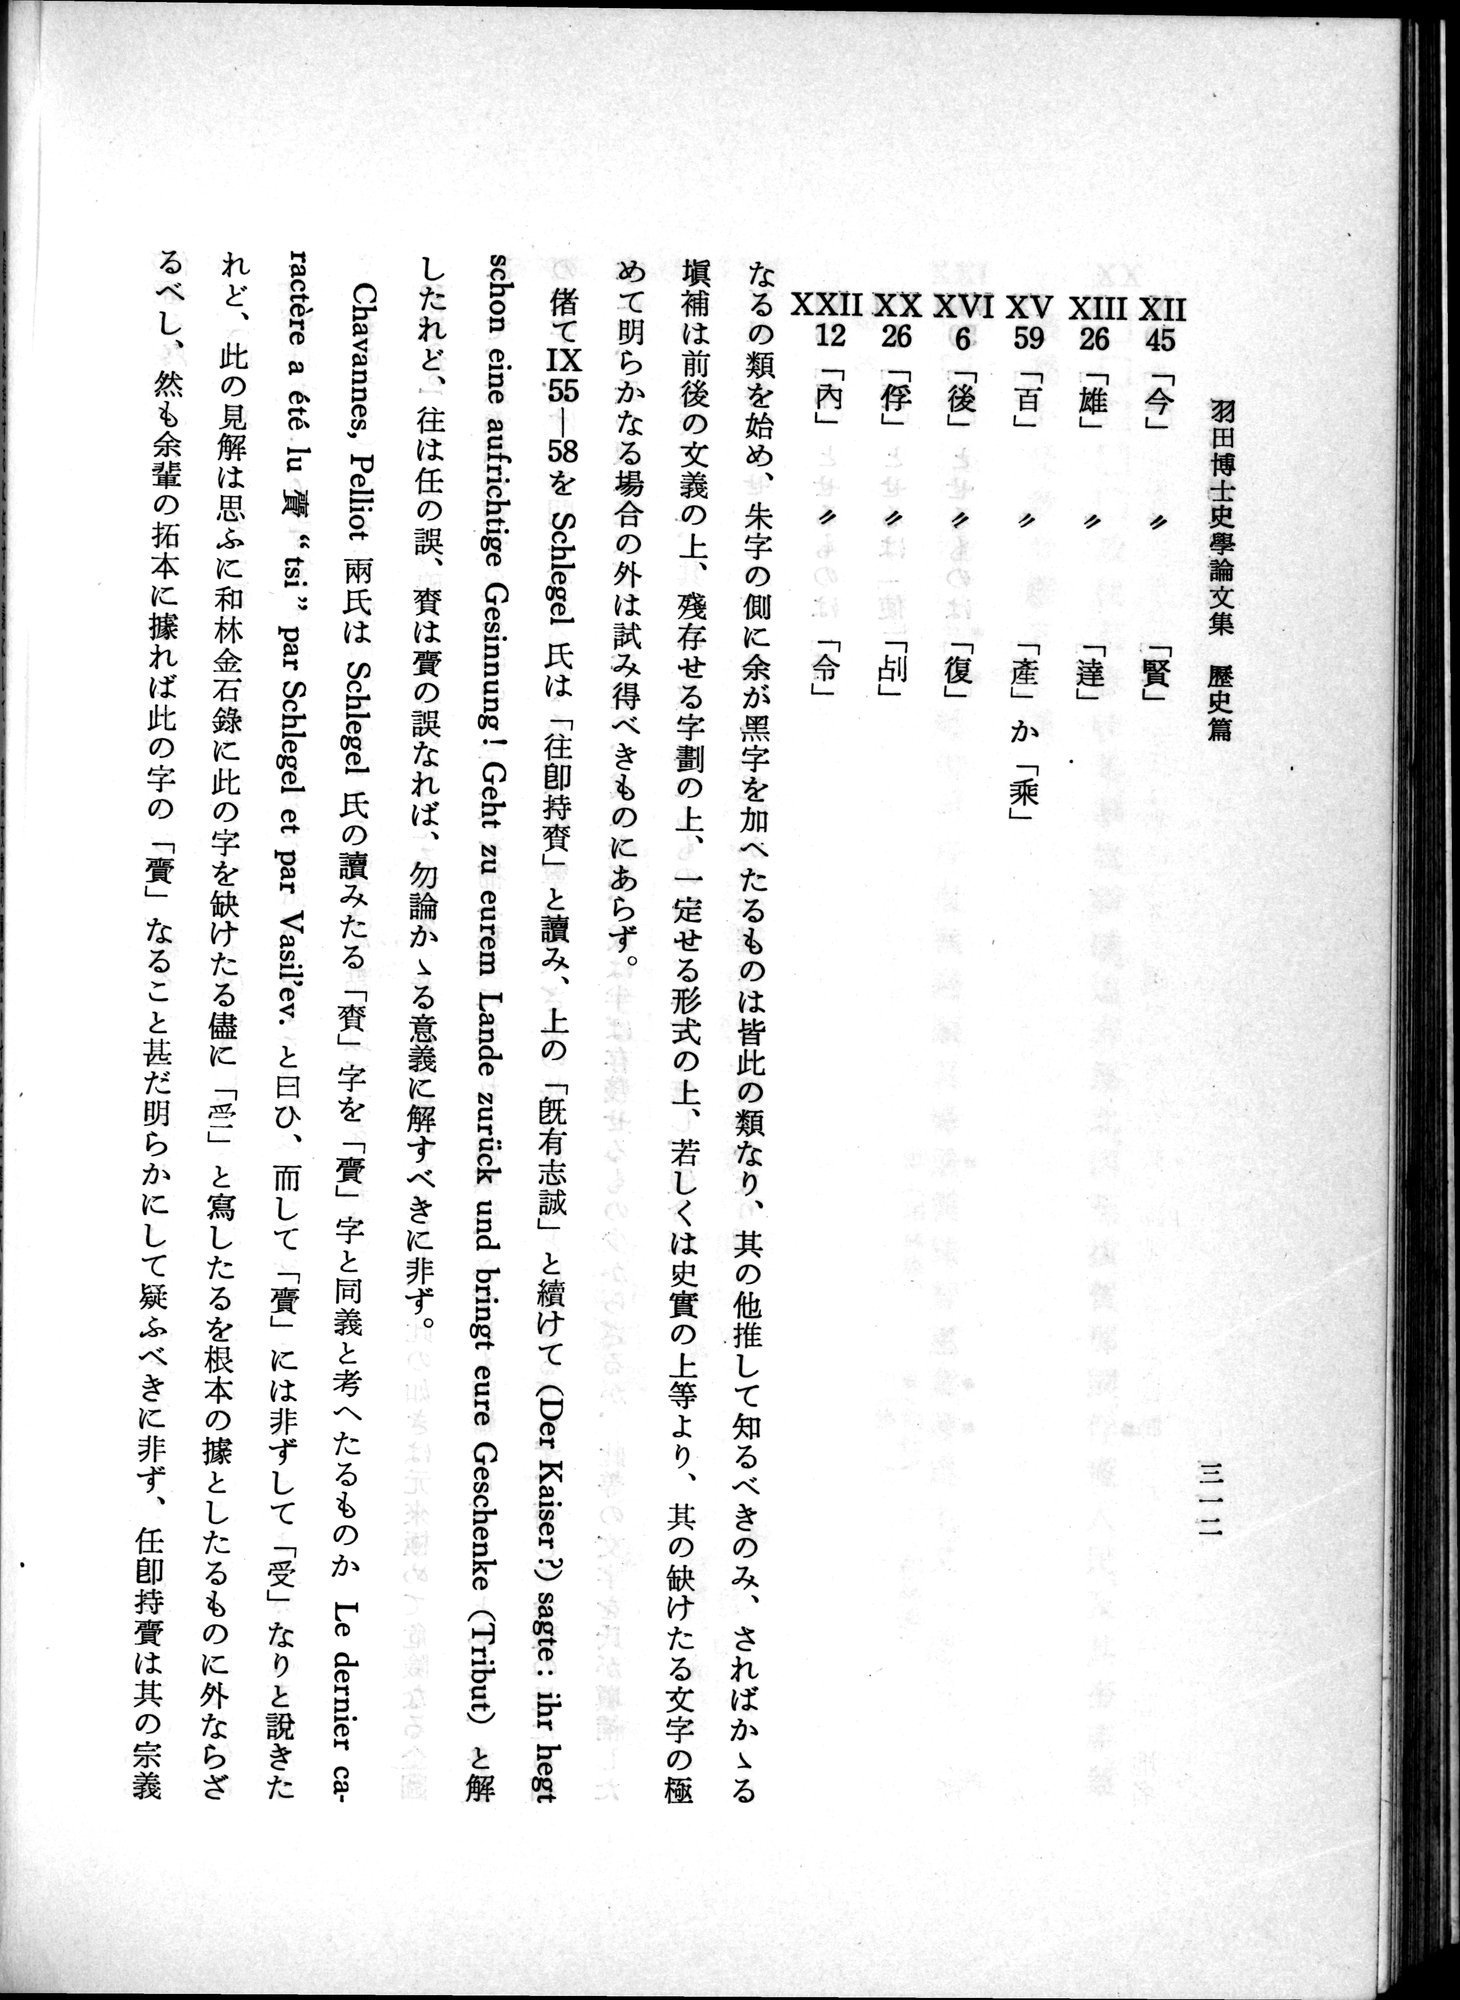 羽田博士史学論文集 : vol.1 / Page 350 (Grayscale High Resolution Image)